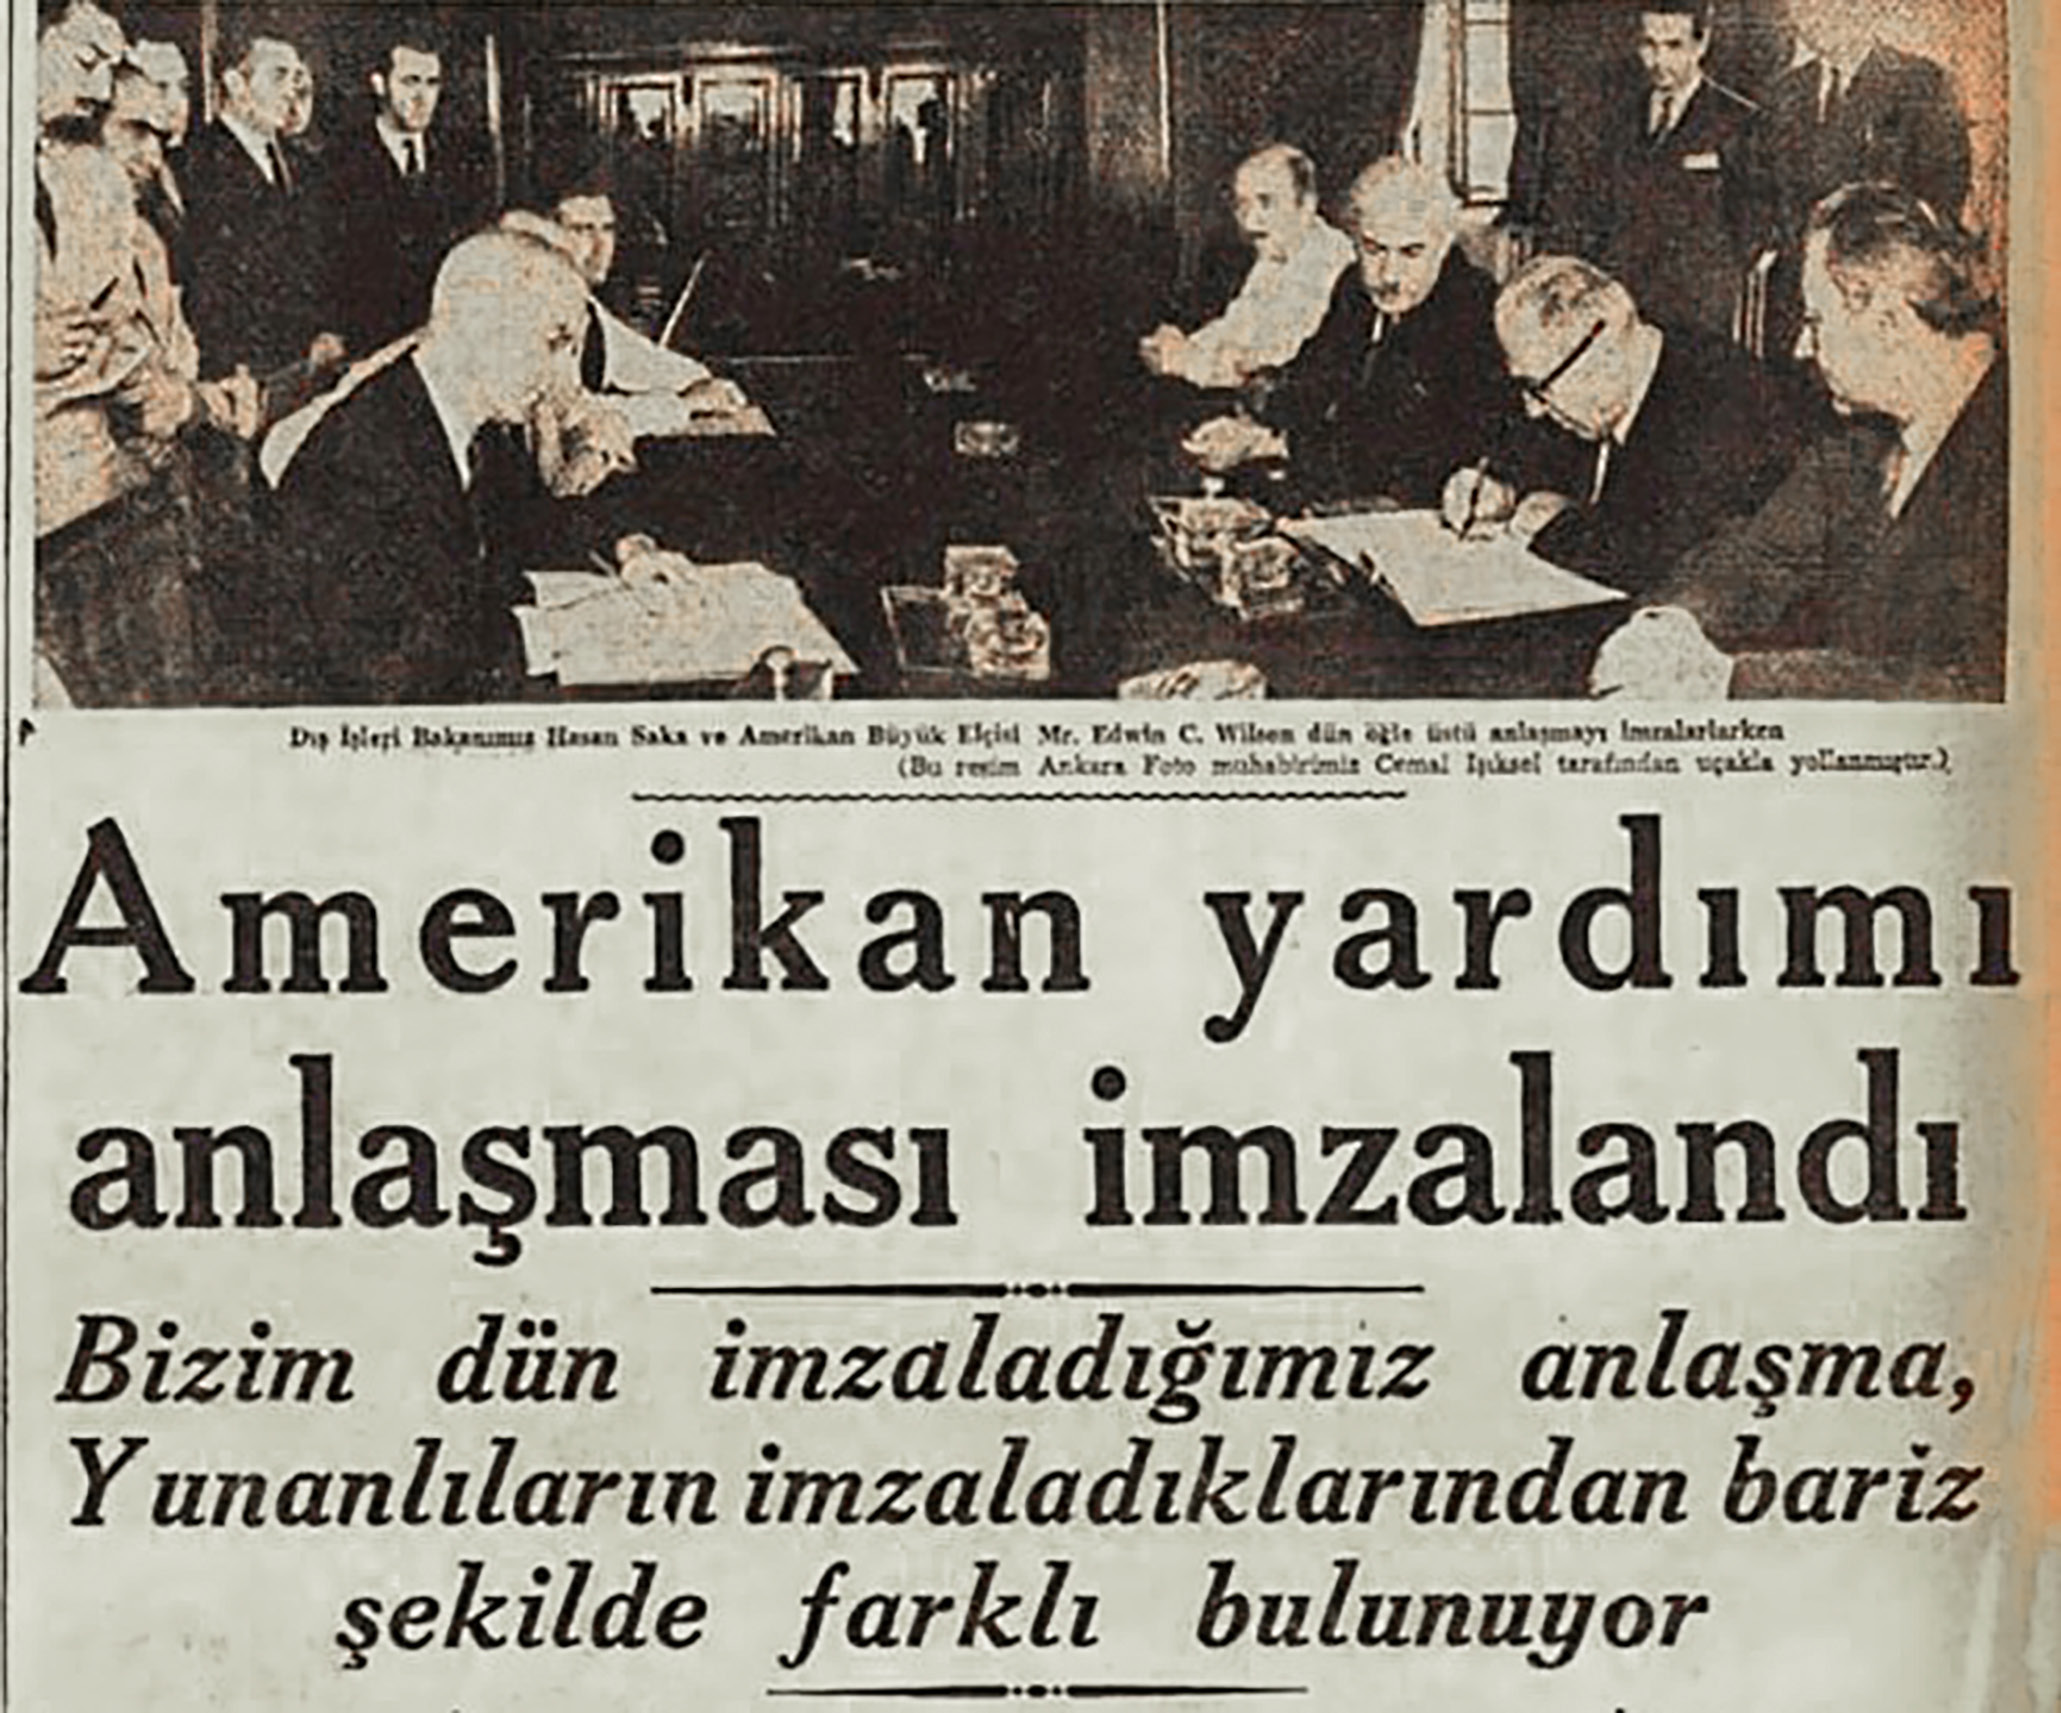 Menderes dönemi - 1947’de Amerikan yardımı anlaşması (Cumhuriyet, 13 Temmuz 1947)